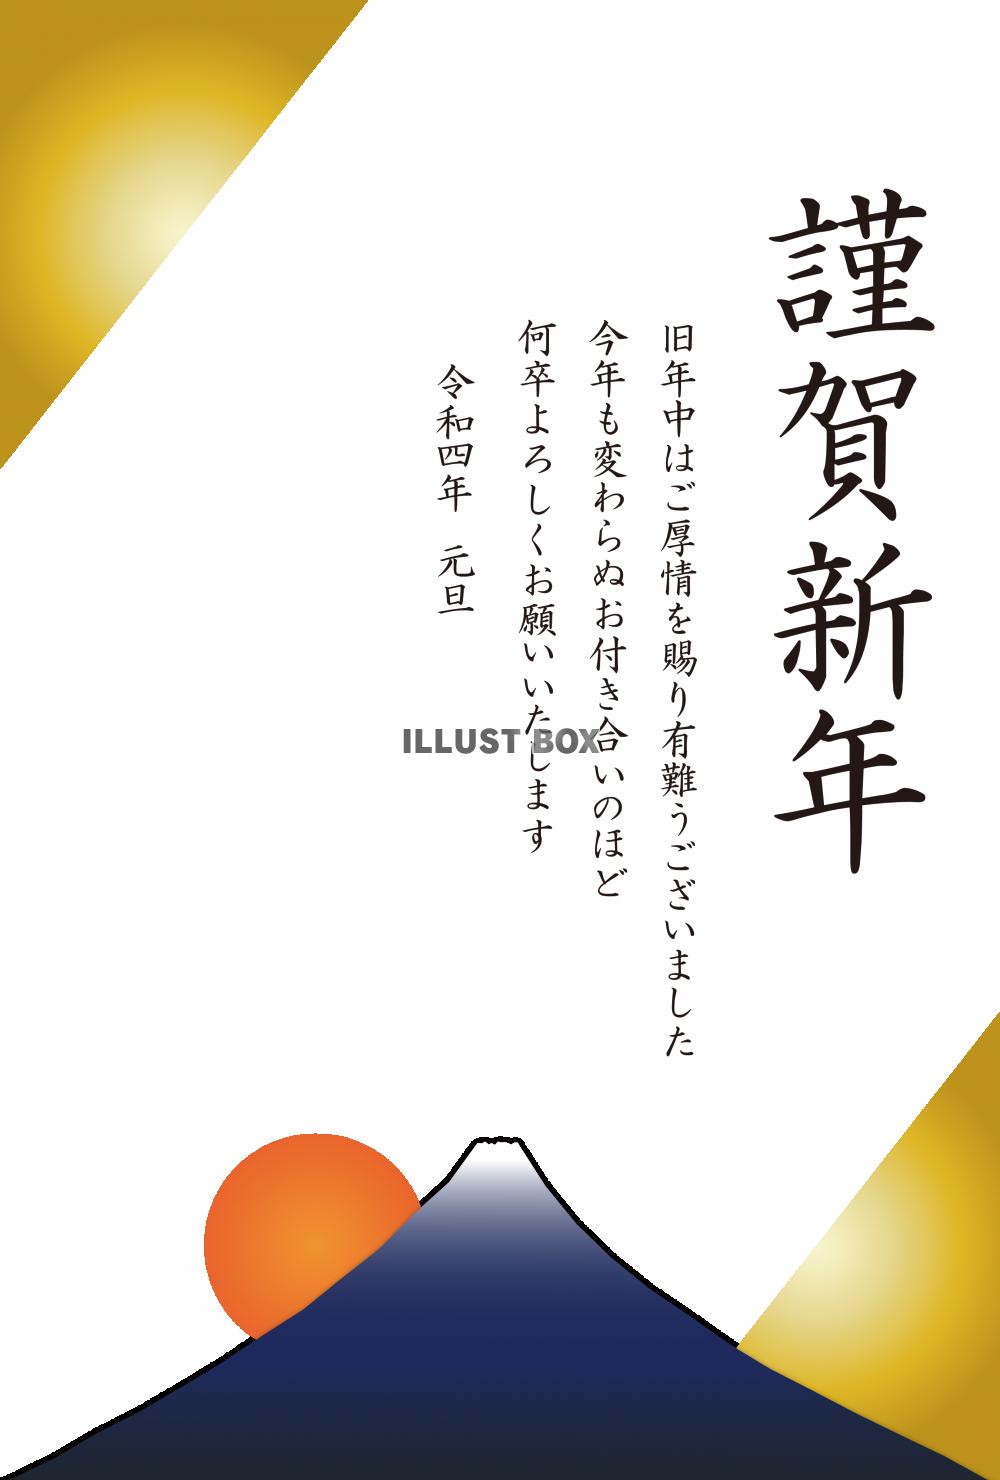 無料イラスト 3 年賀状 22 初日の出 富士山 斜め 謹賀新年